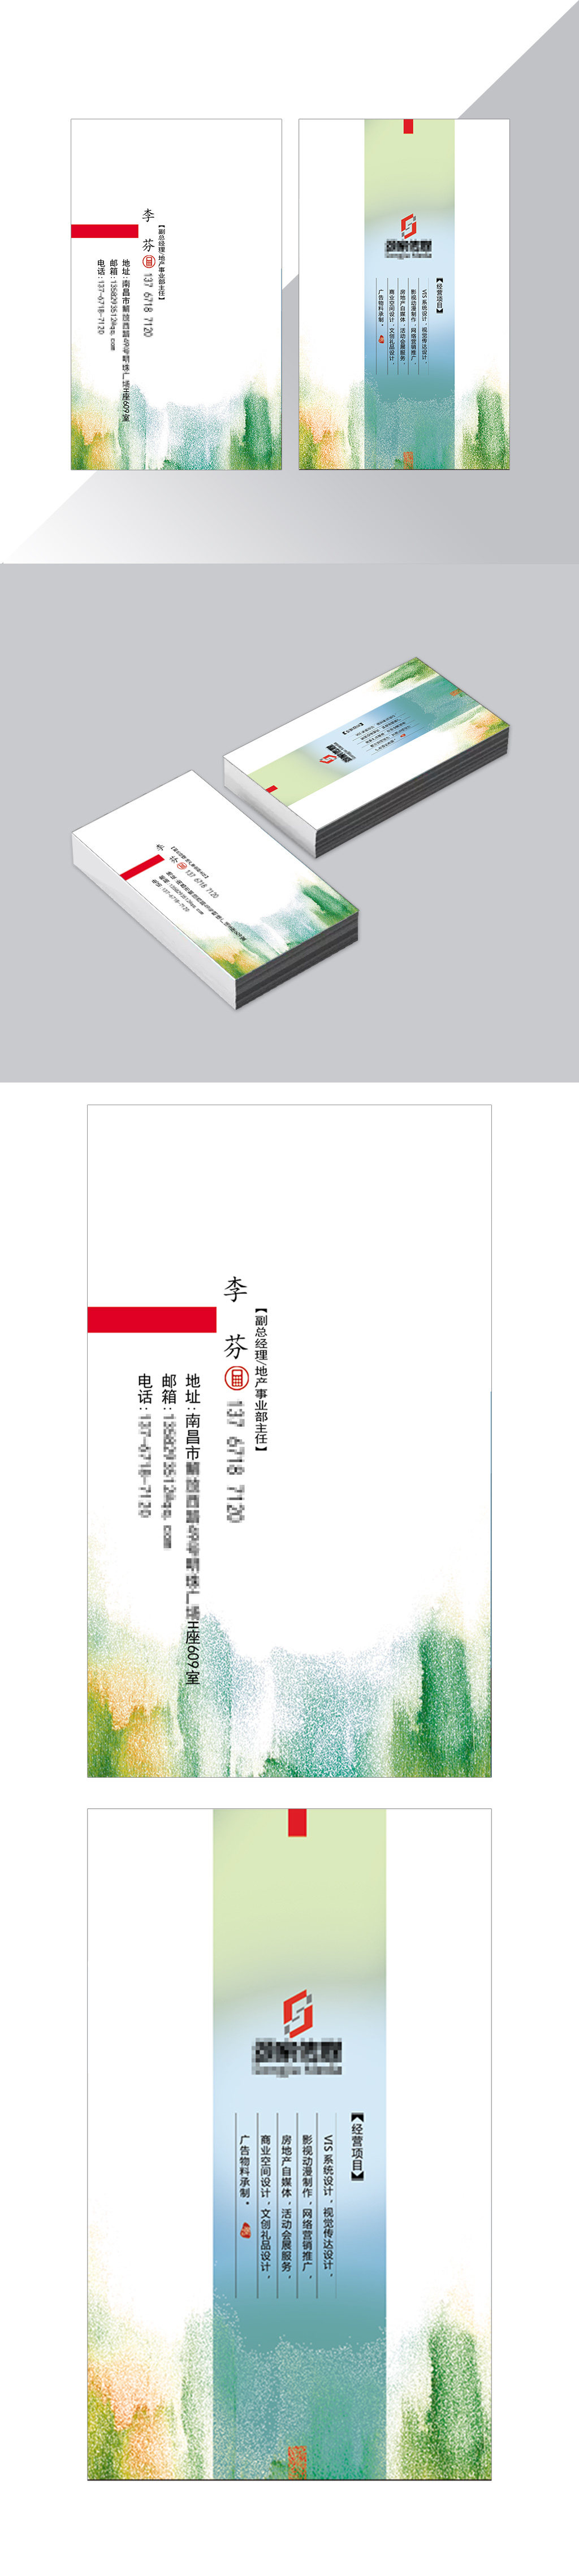 江西南昌颂家传媒有限公司名片设计图0